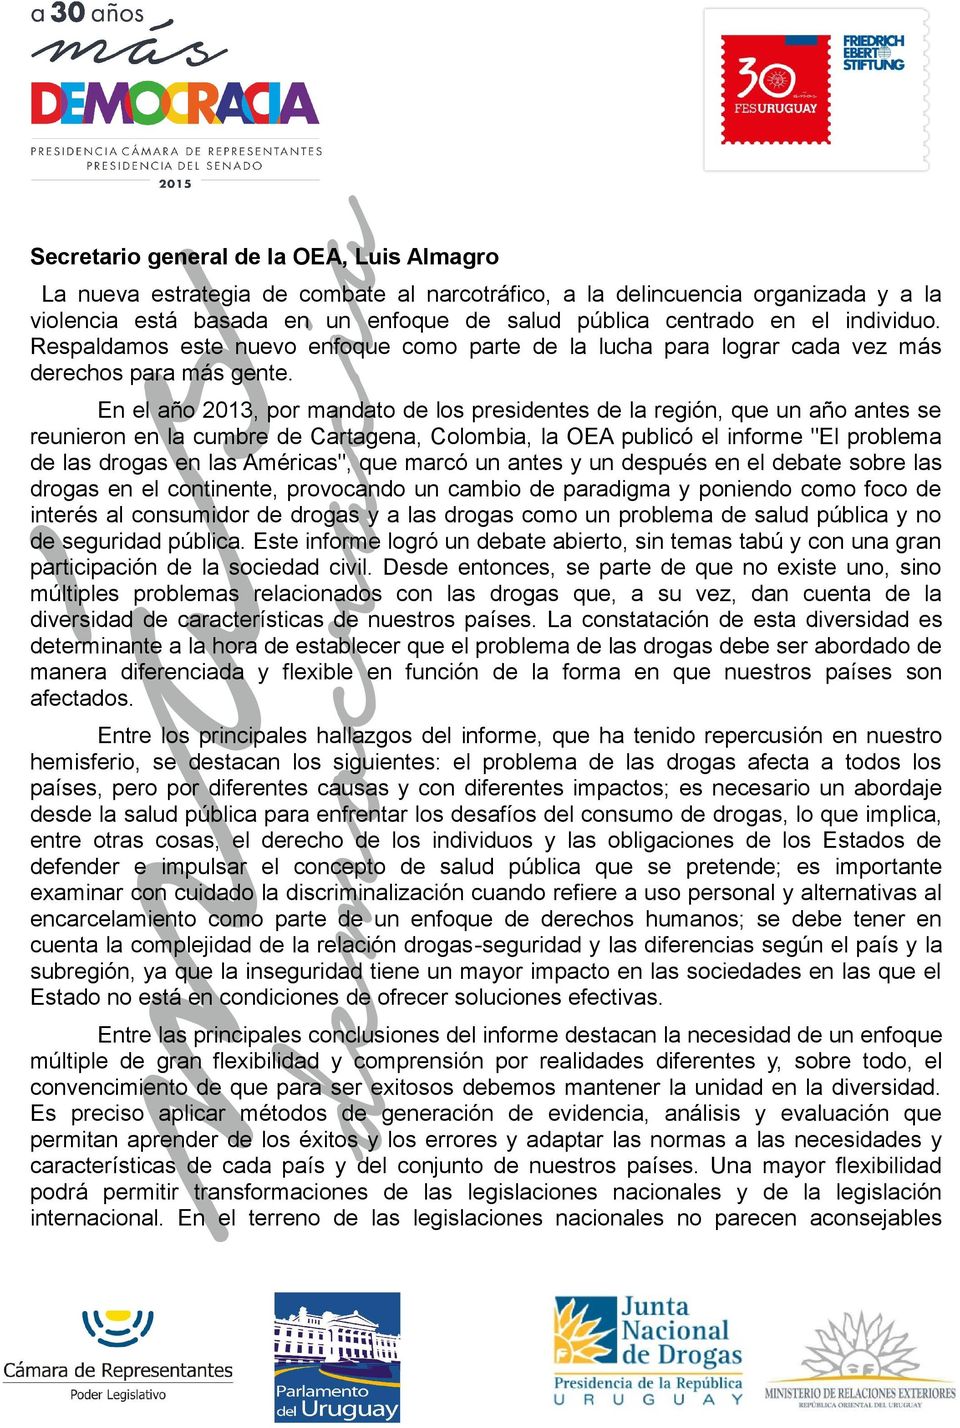 En el año 2013, por mandato de los presidentes de la región, que un año antes se reunieron en la cumbre de Cartagena, Colombia, la OEA publicó el informe "El problema de las drogas en las Américas",